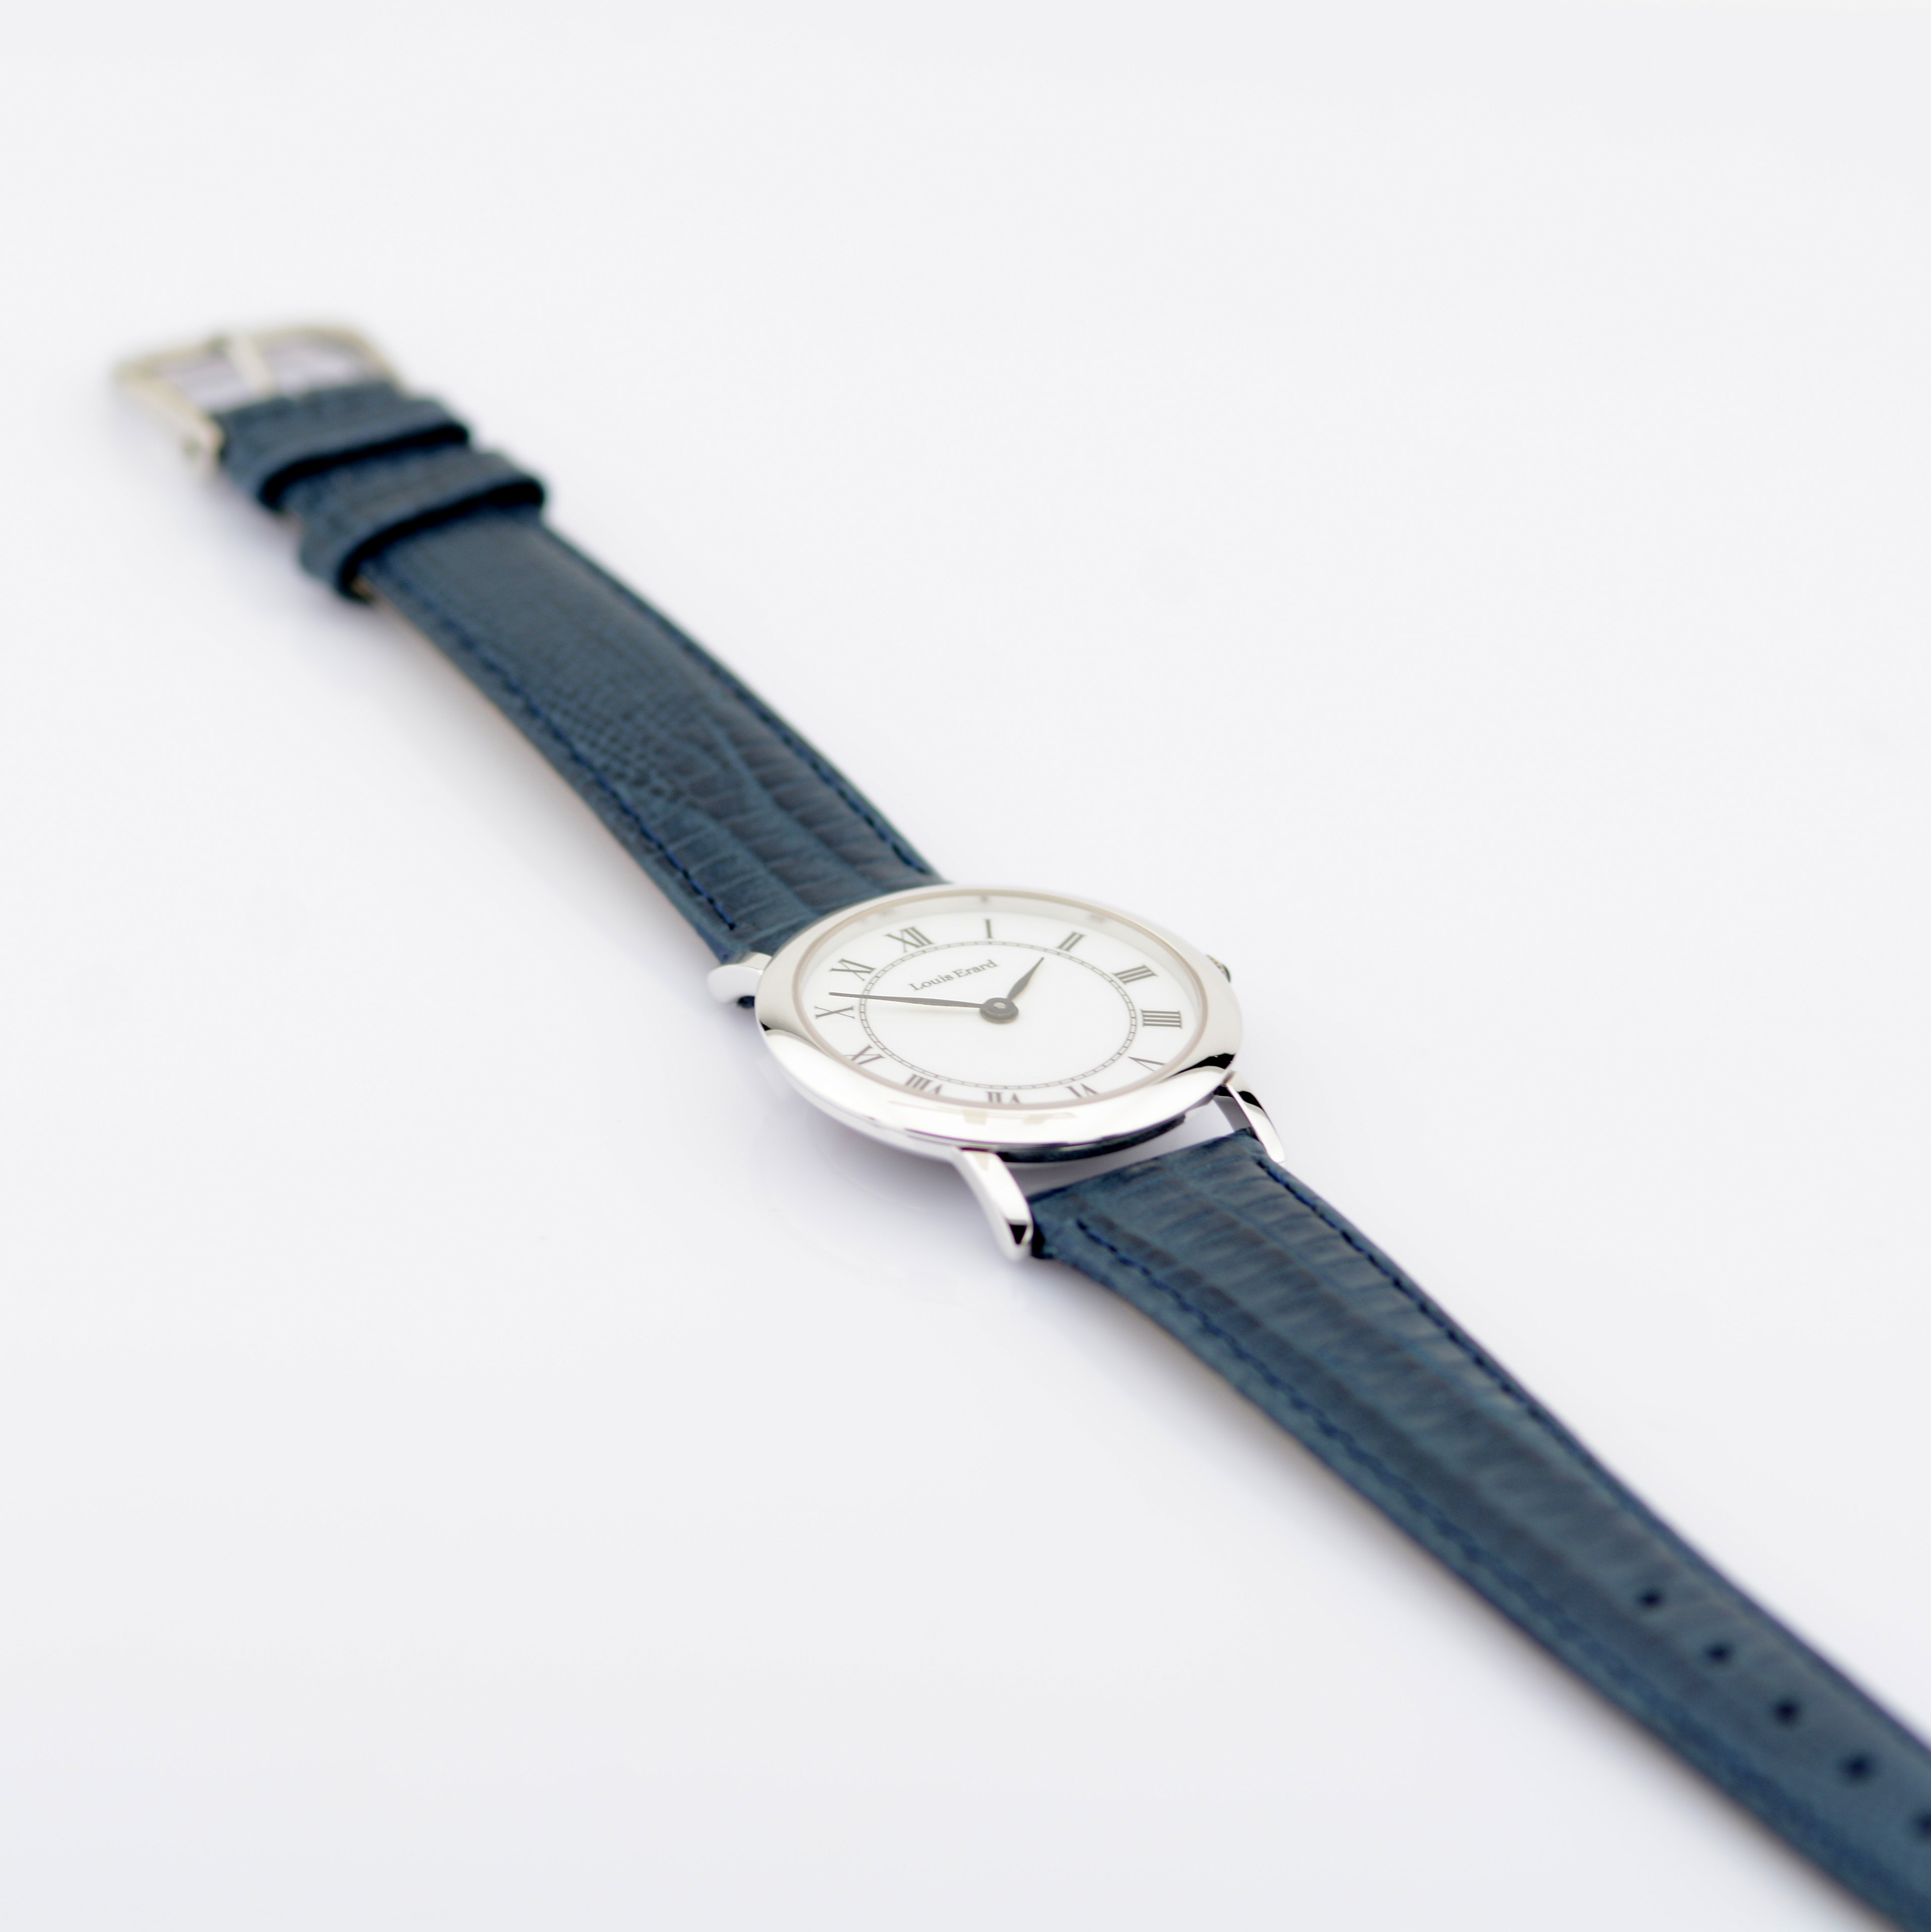 Louis Erard - (Unworn) Lady's Steel Wrist Watch